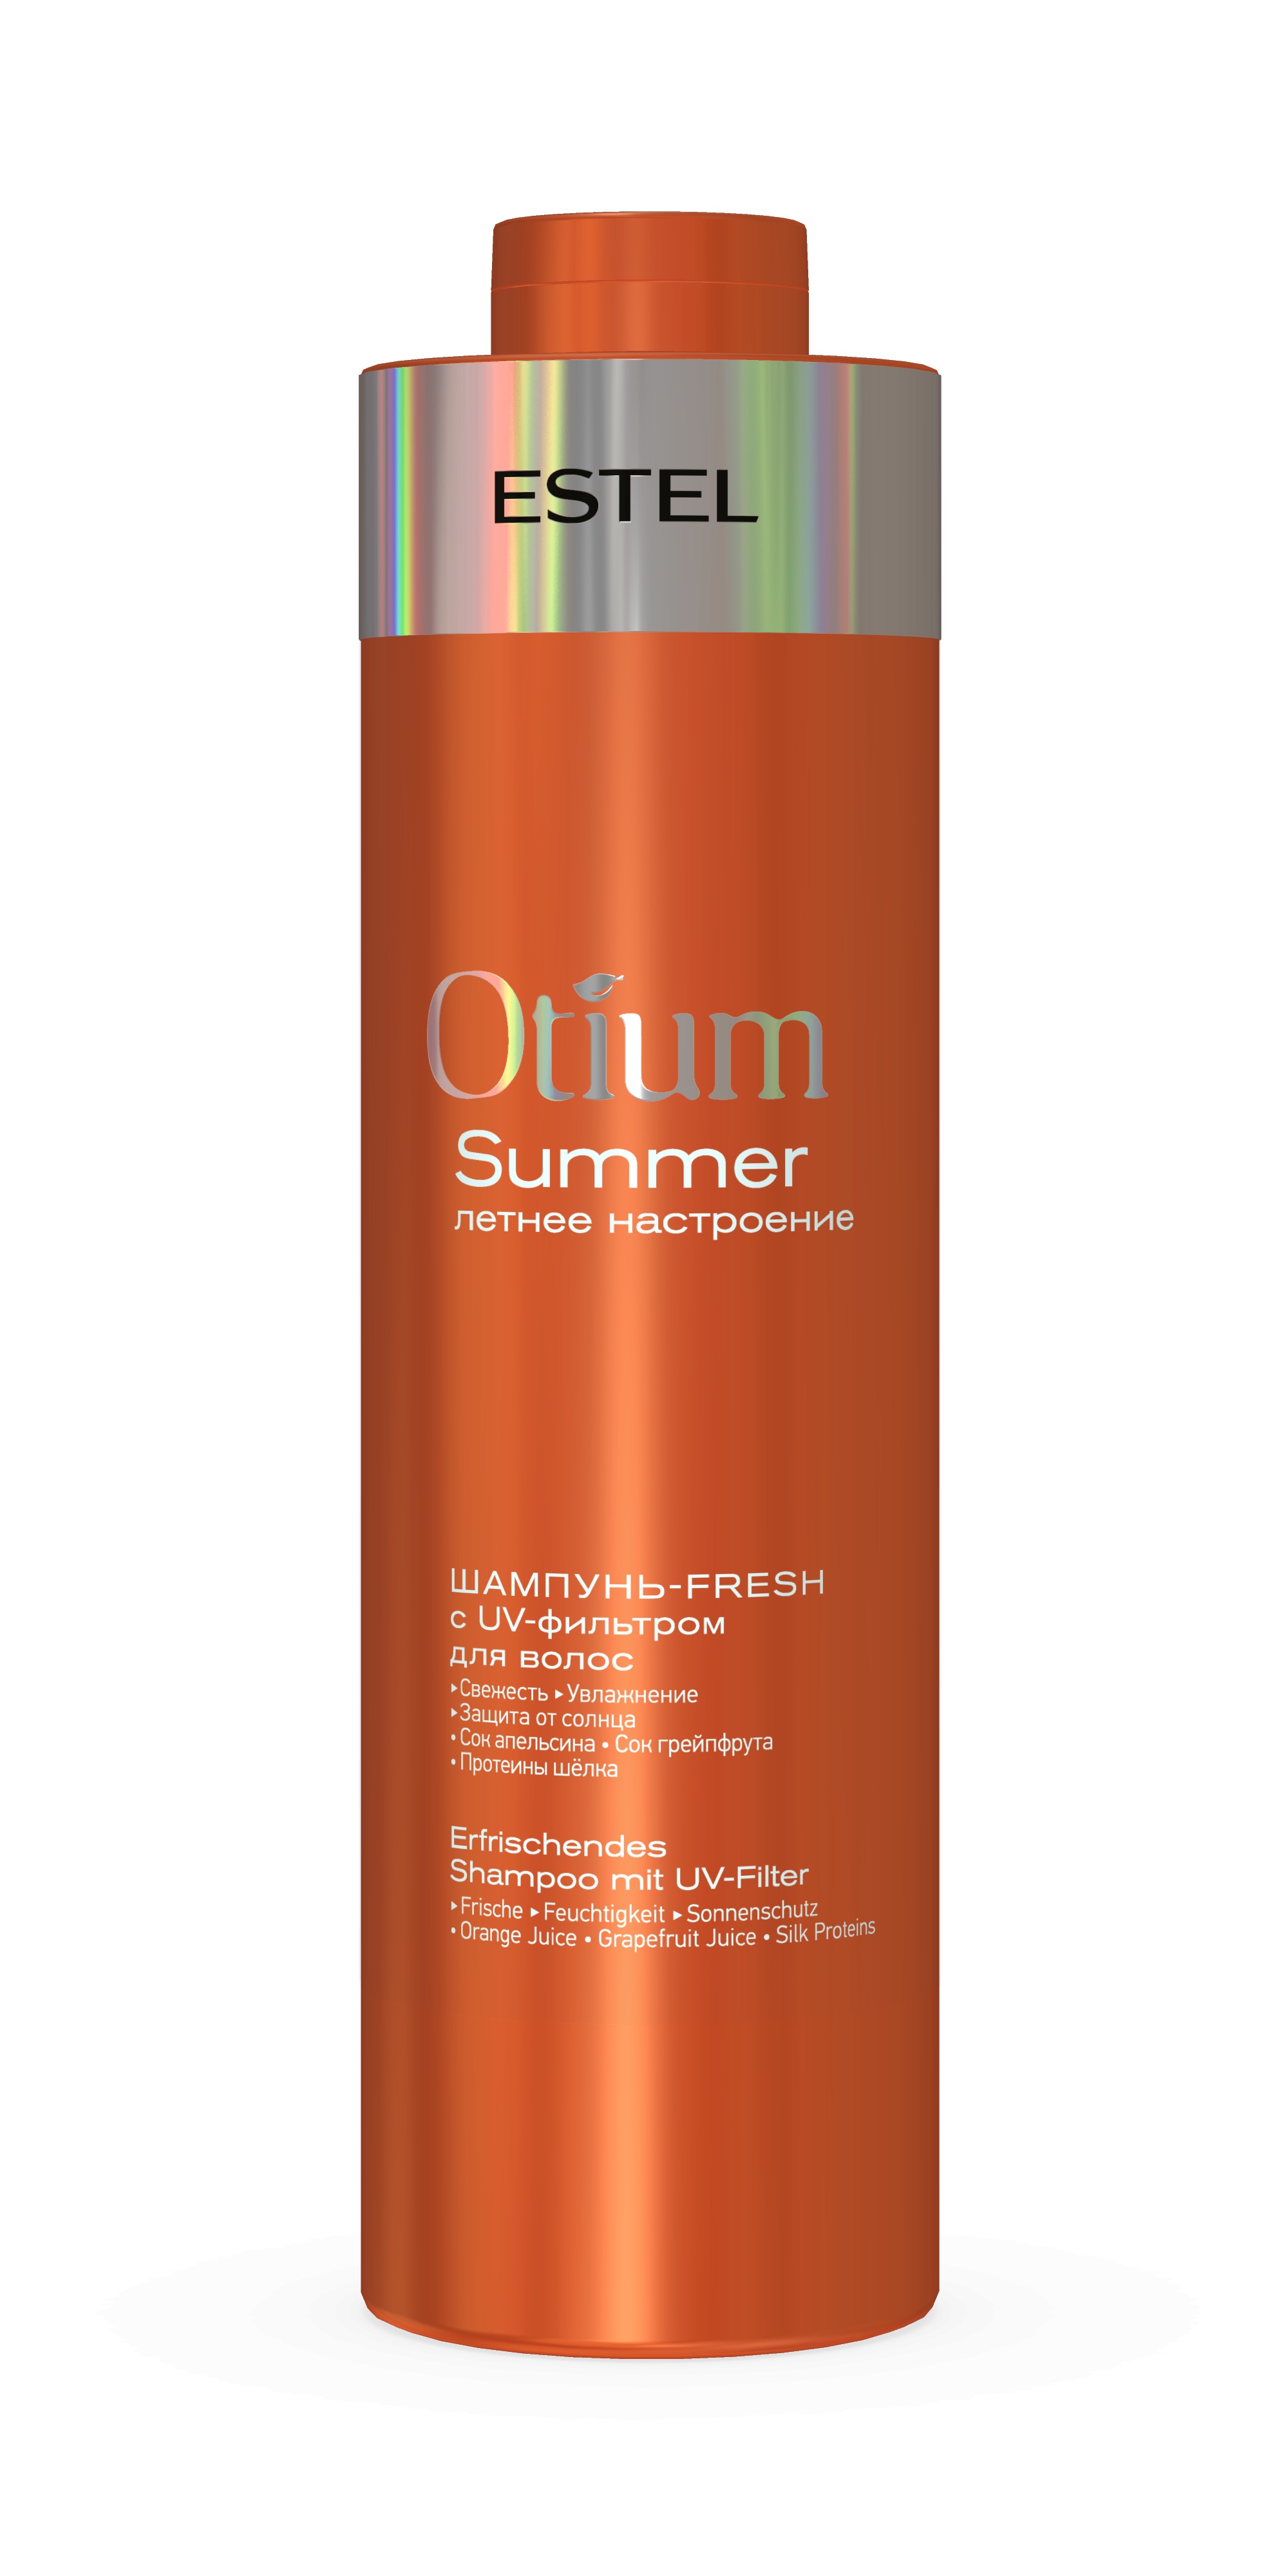 Шампунь-fresh c UV-фильтром для волос OTIUM SUMMER 1000 мл